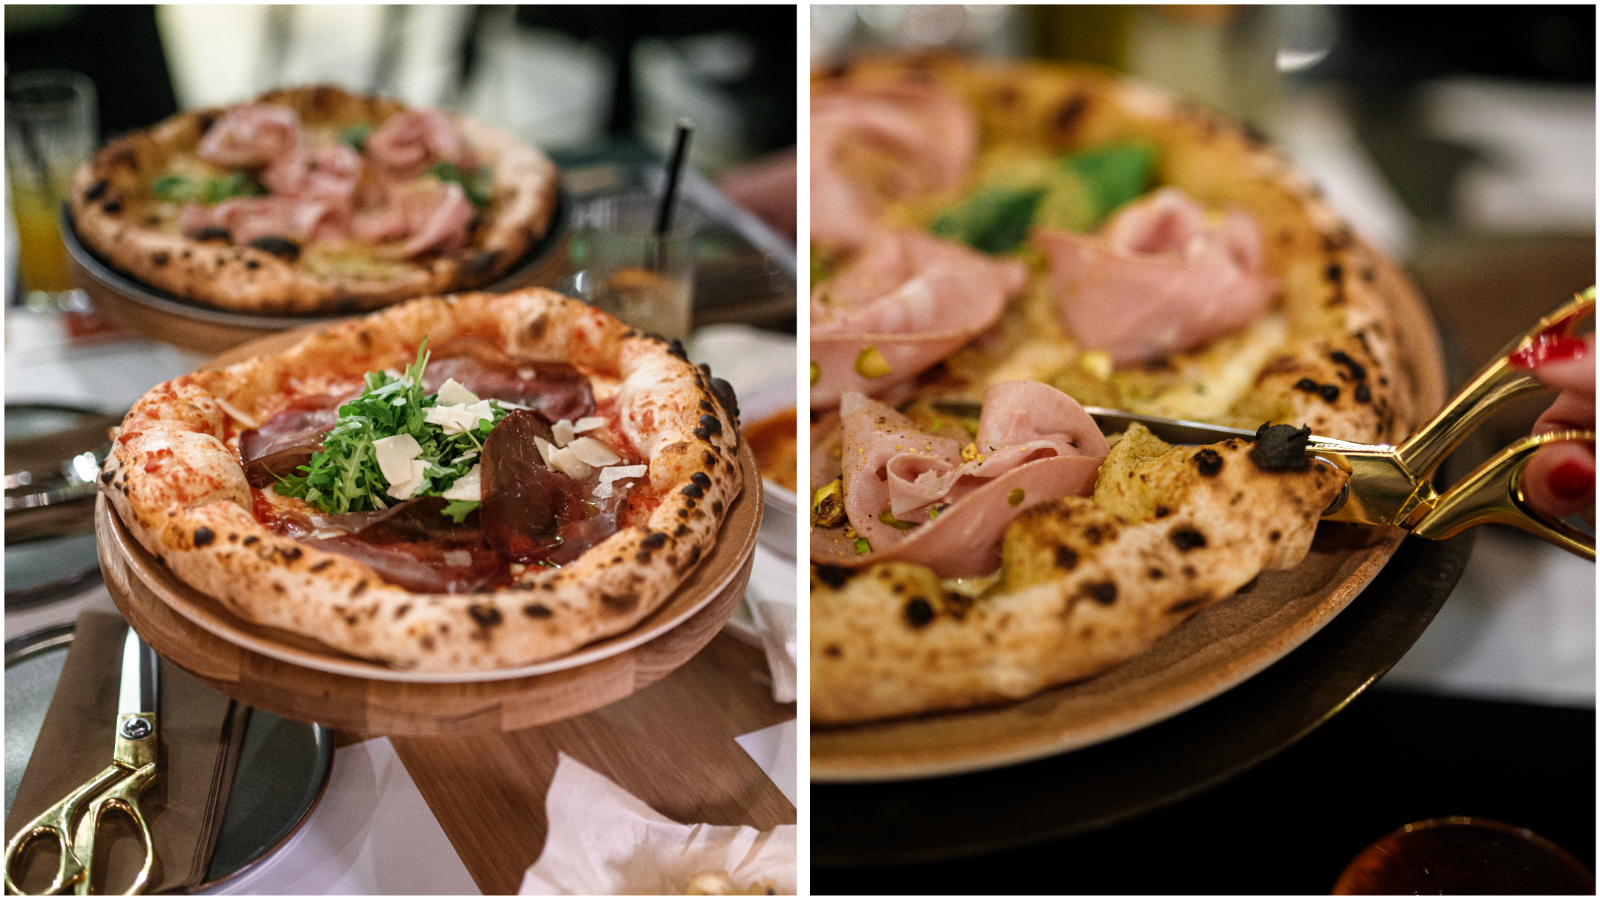 Donosimo sve o novoj pizzeriji Pépé Pizza Place – pizze su savršene, režete ih škarama, a probajte i deserte